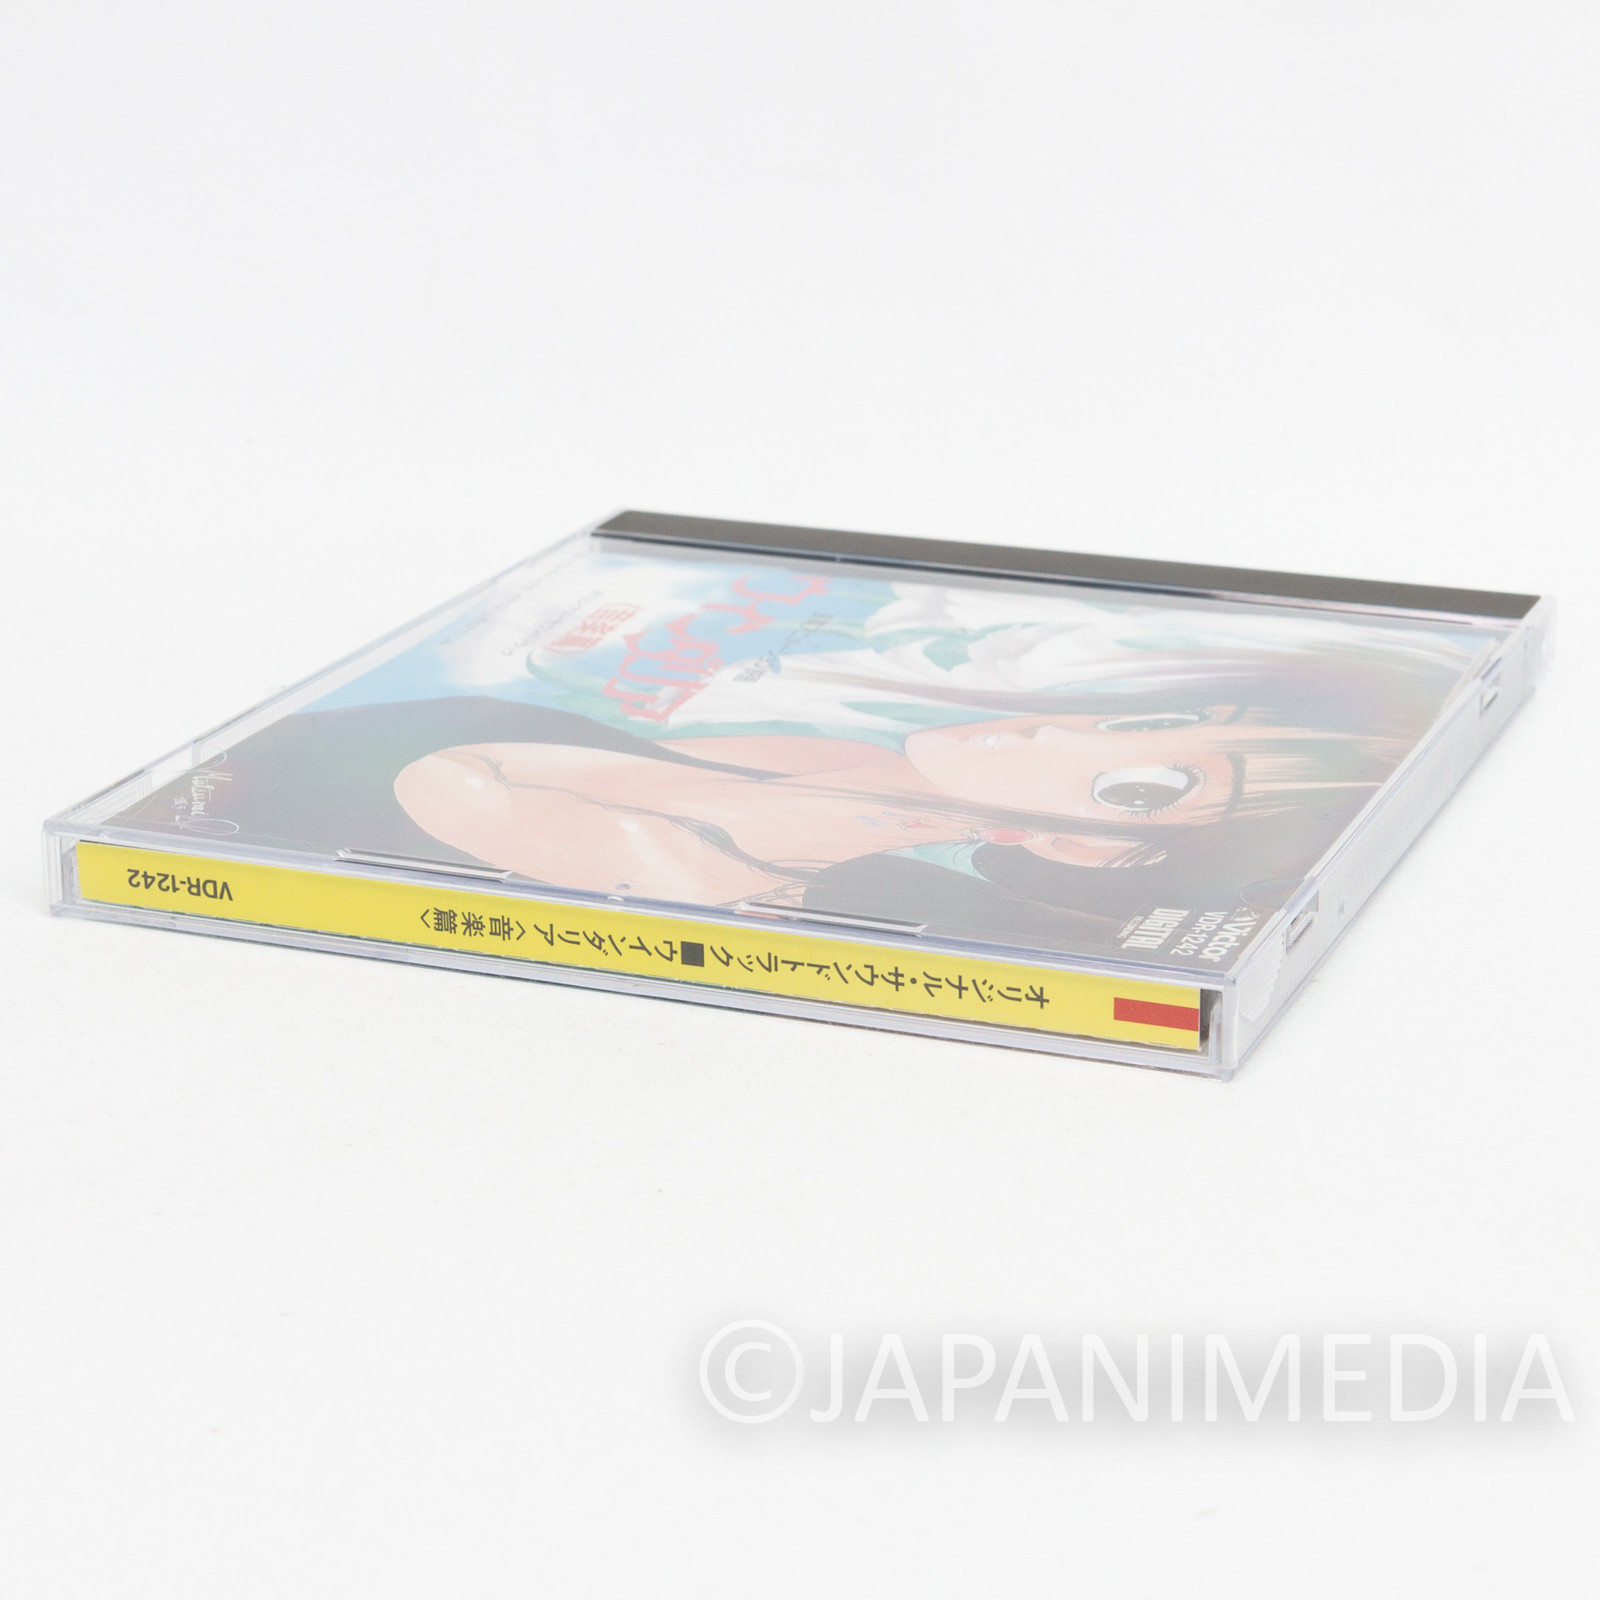 Windaria Sound Track Music CD VDR-1242 JAPAN ANIME MUTSUMI INOMATA